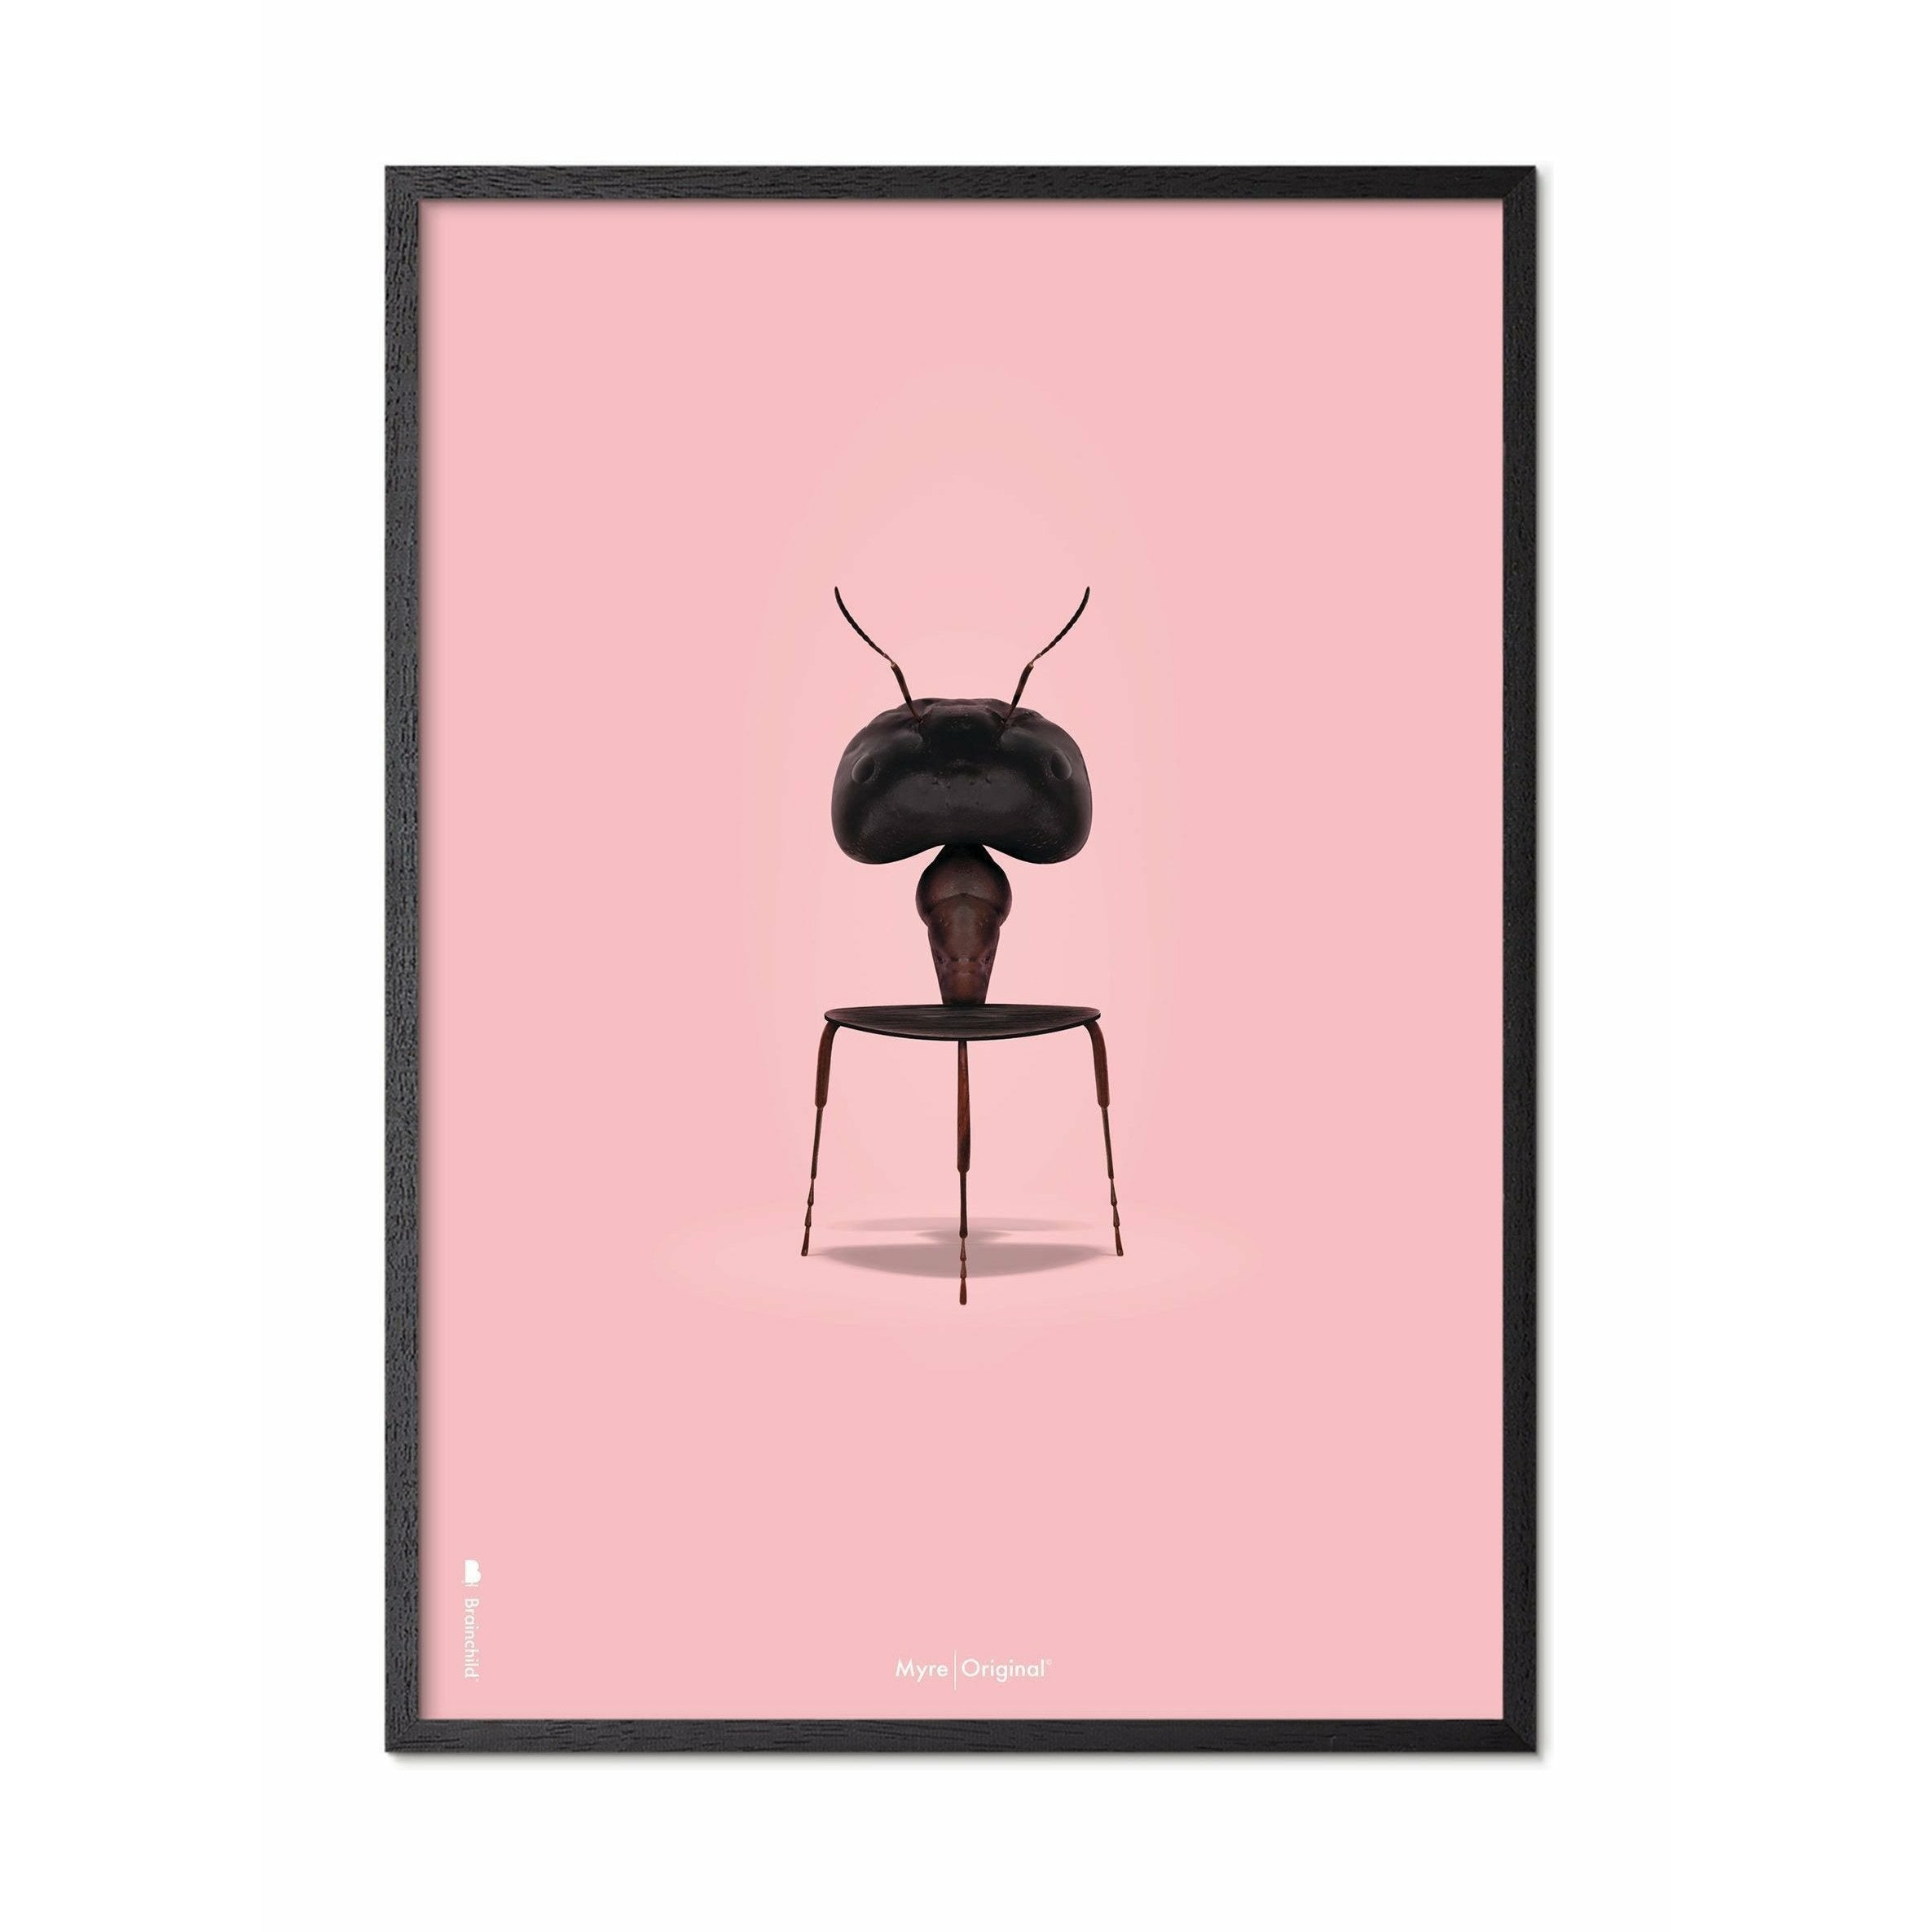 Brainchild Ant Classic plakát, rám v černém lakovaném dřevu 50x70 cm, růžové pozadí